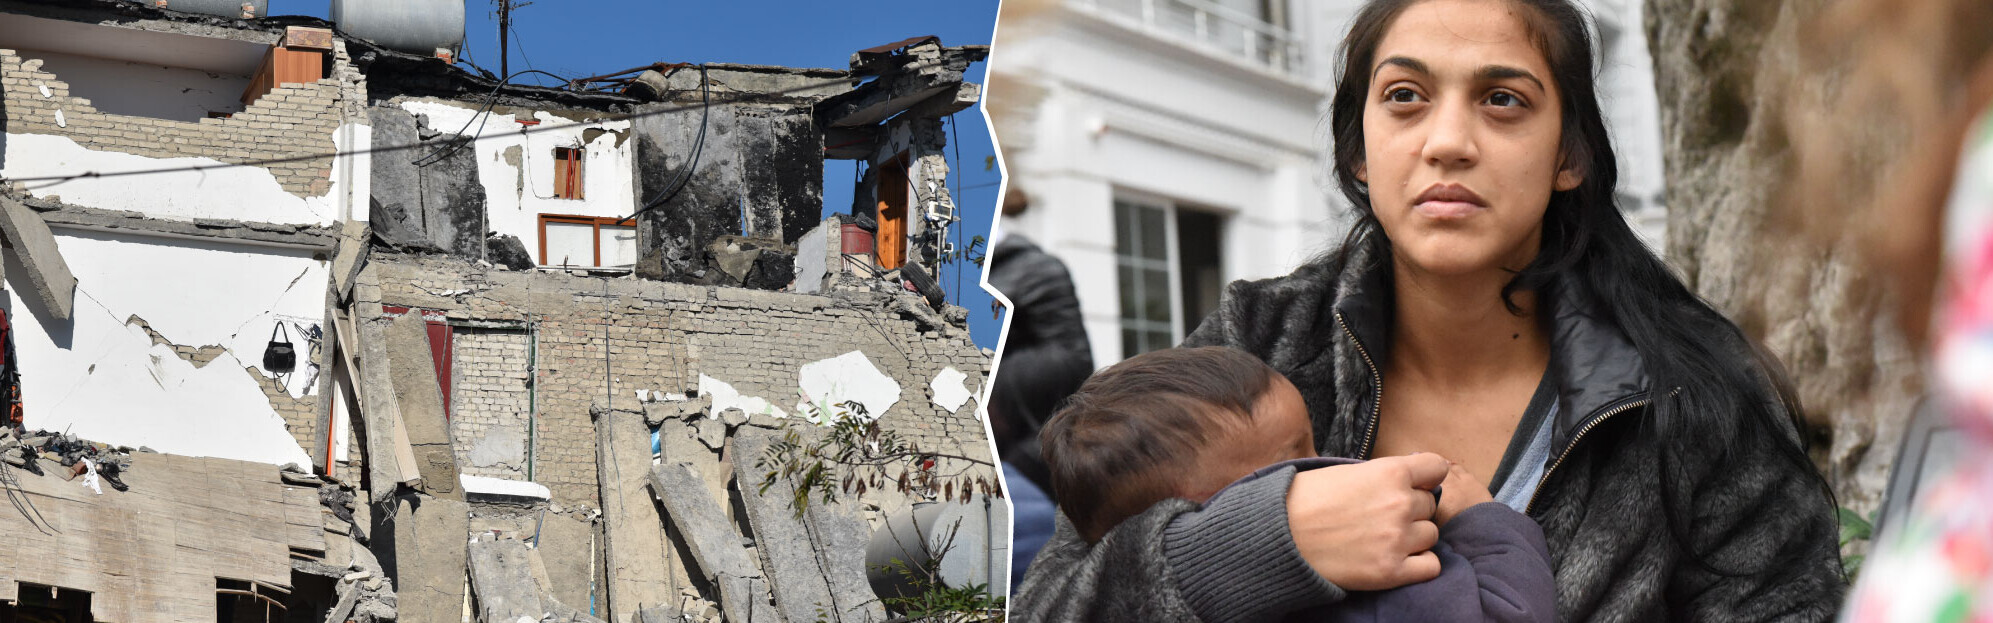 Zerstörung und eine junge Frau mit Kind nach dem Erdbeben in Albanien